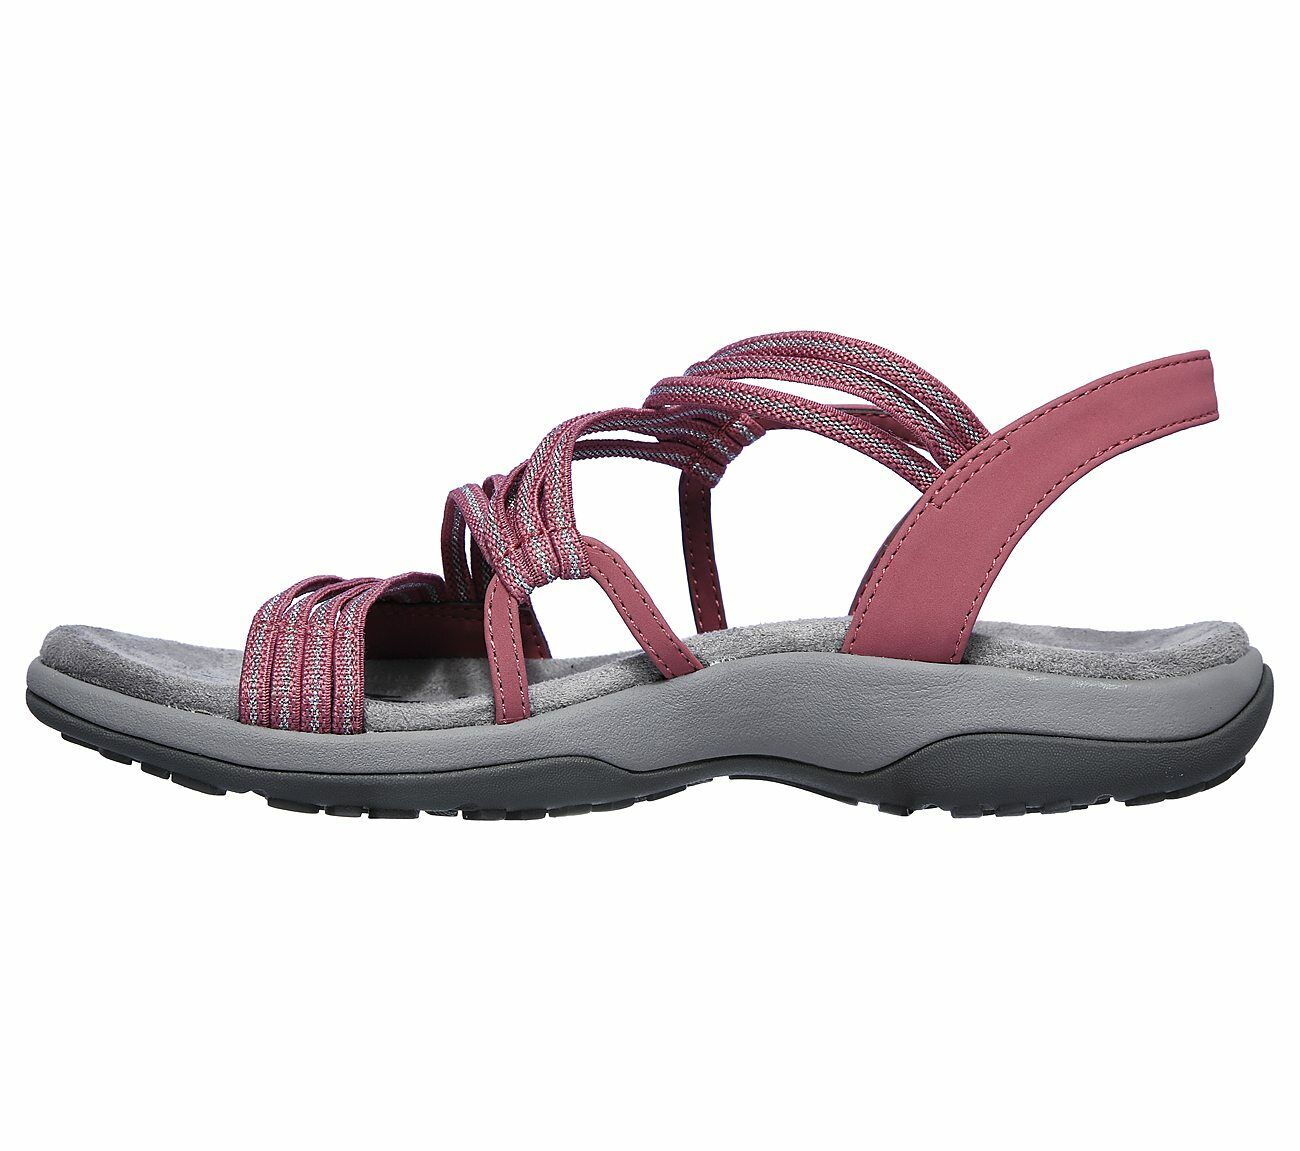 Skechers Ladies Reggae Slim Stretch Slinky Pink Sandals 163072/ROS